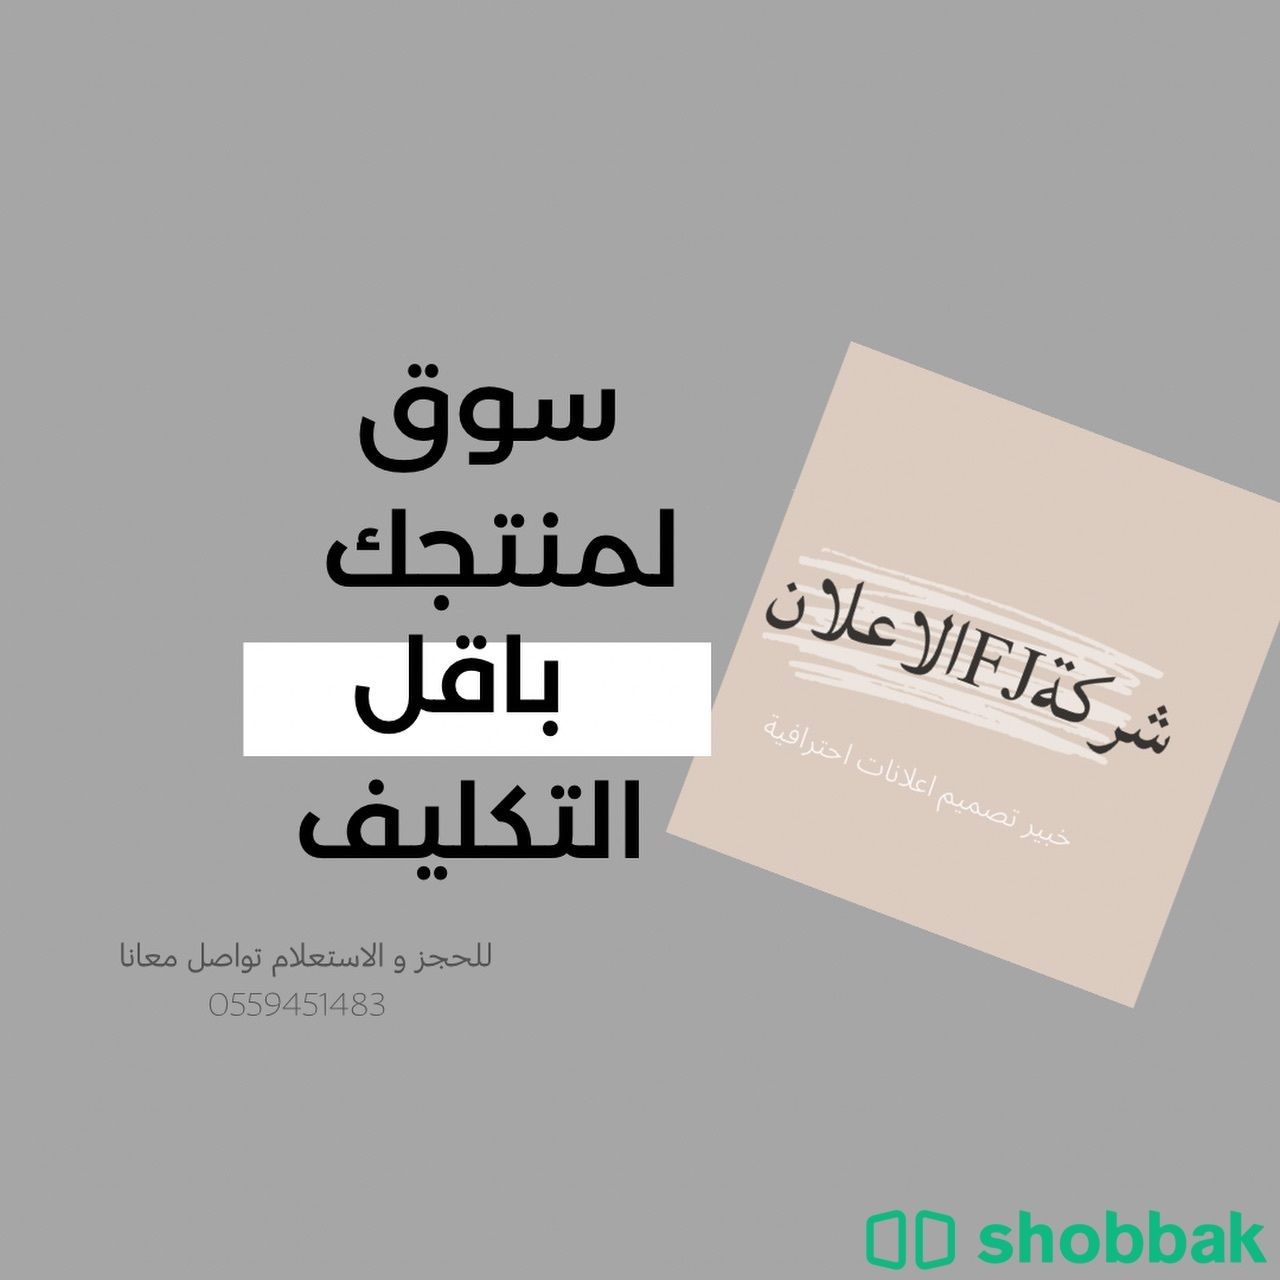 كتابة اعلان وتصميم  Shobbak Saudi Arabia